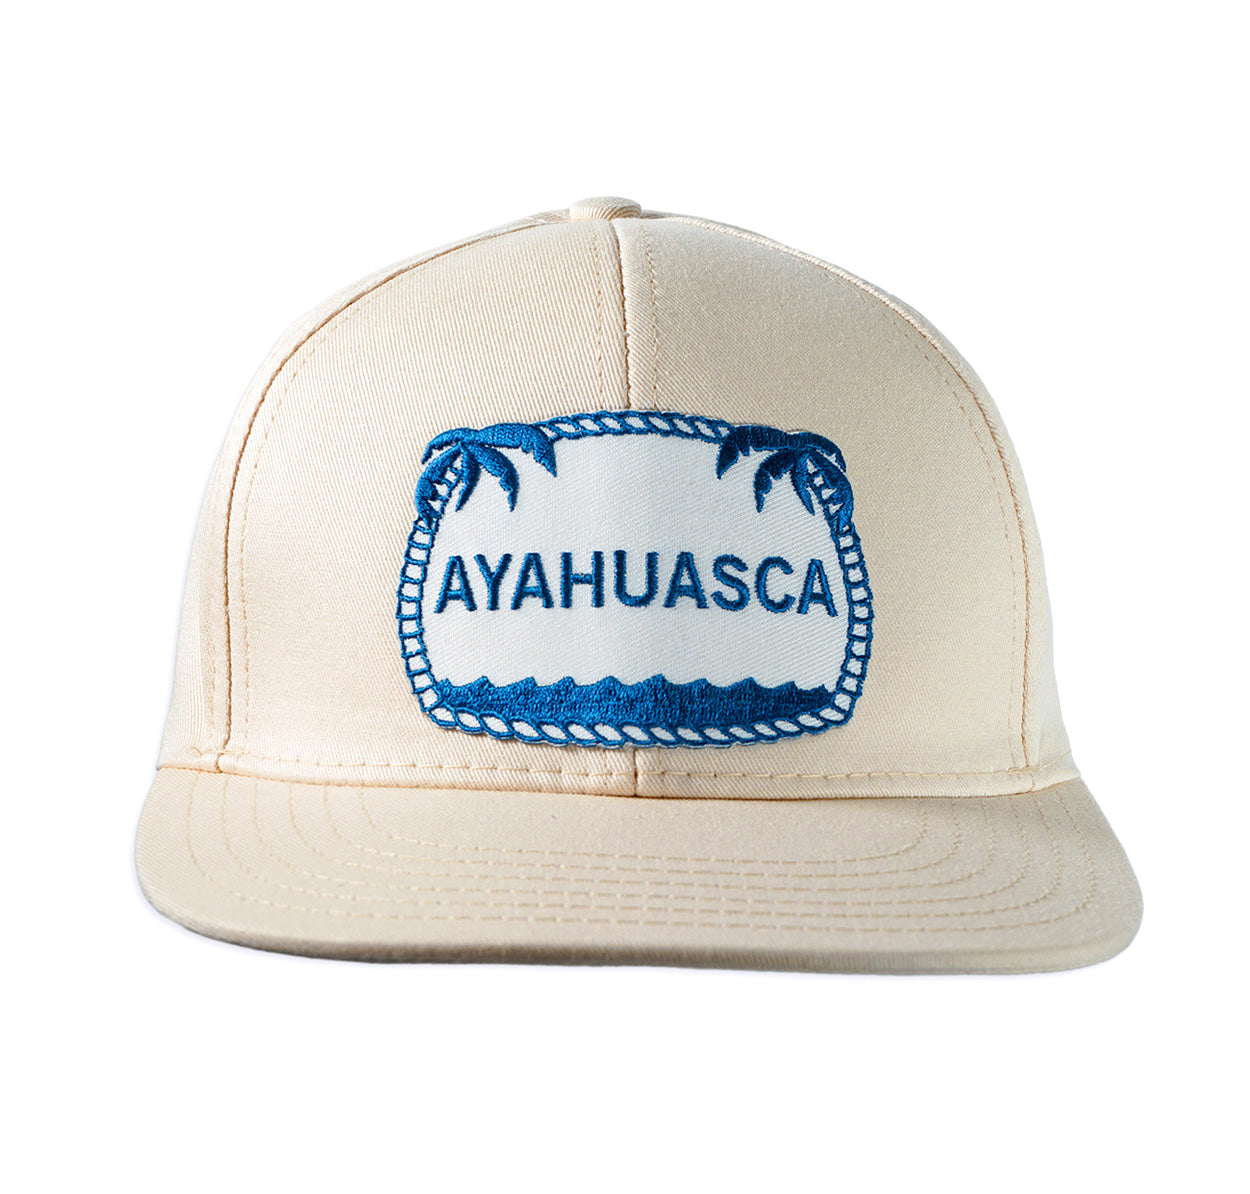 Ayahuasca ball cap